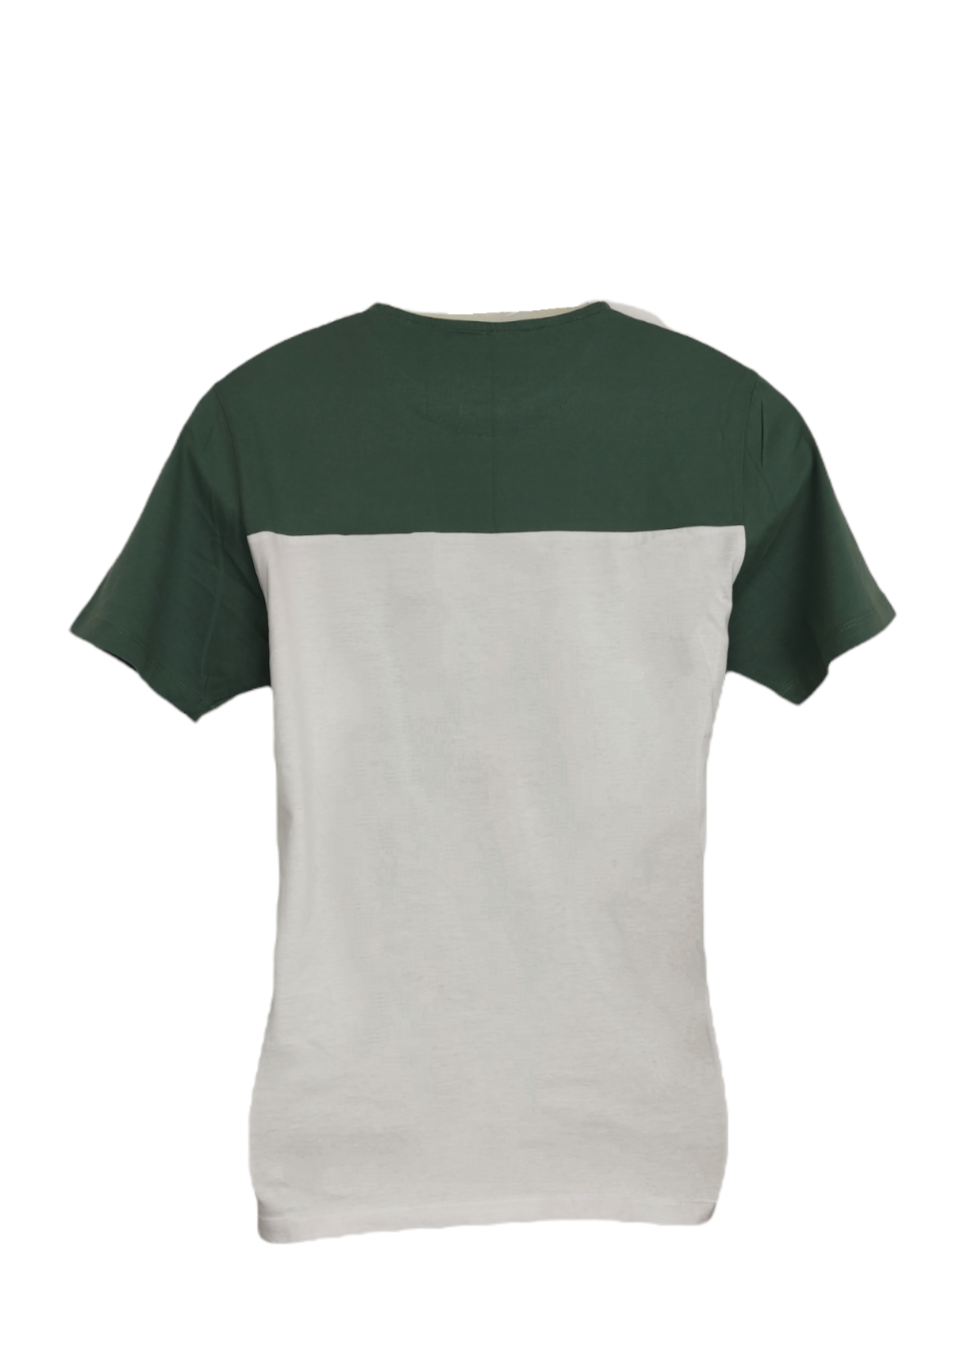 Ανδρική Μπλούζα - T-Shirt NEXT σε Λευκό - Χακί χρώμα (Medium)